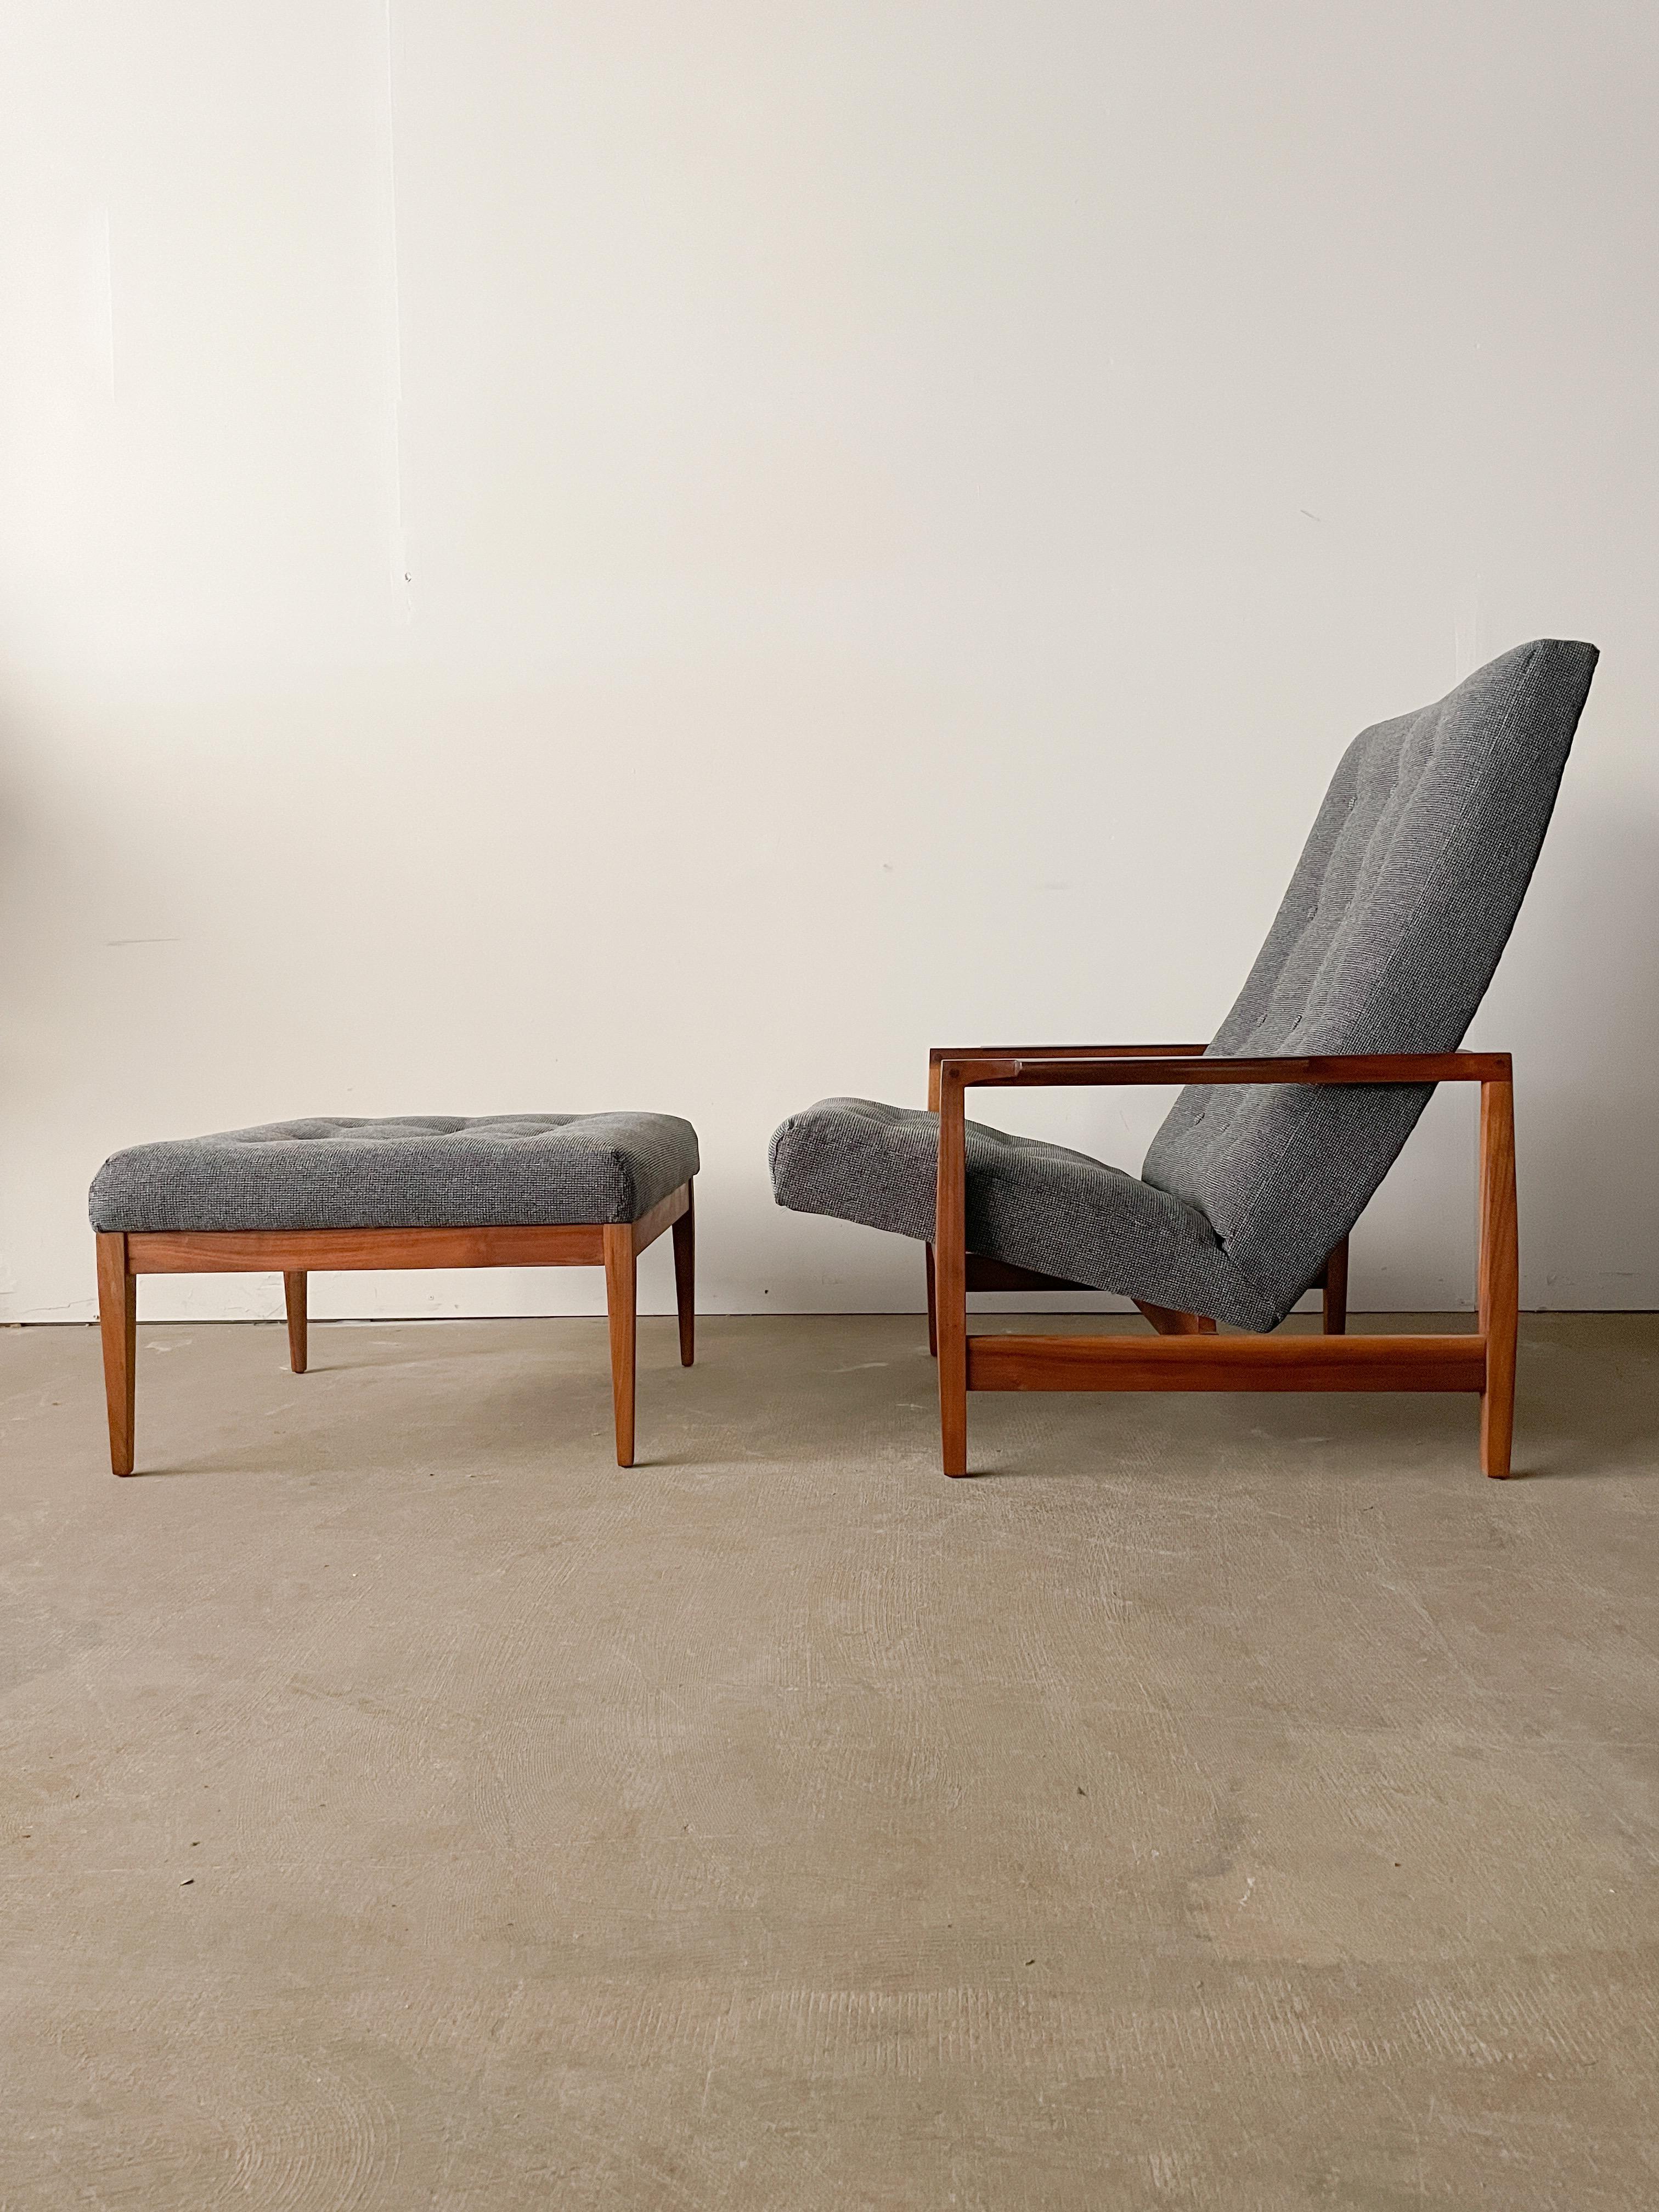 Dies ist ein schönes und seltenes Paar aus Sessel und Ottomane, entworfen von Kipp Stewart für Directional im Jahr 1960. Hervorragende Form und schöne Hölzer vereinen sich in diesem Stuhl mit Nussbaumgestell und prächtigen Intarsien aus